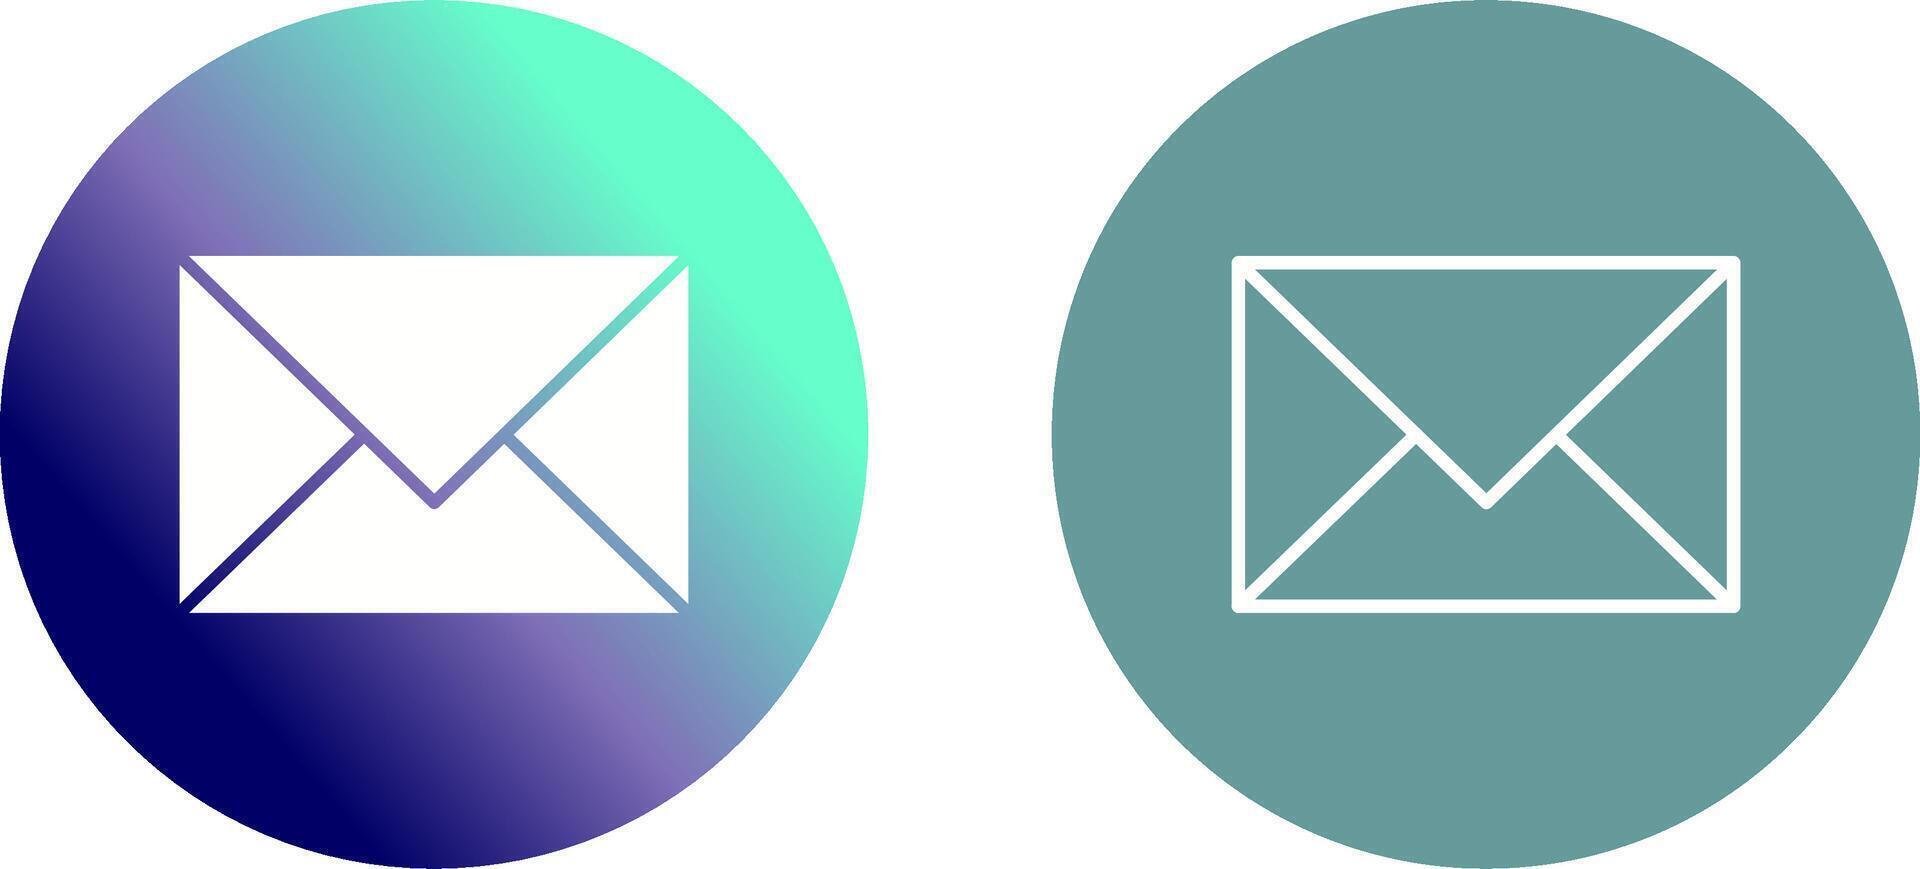 e-mail icona design vettore